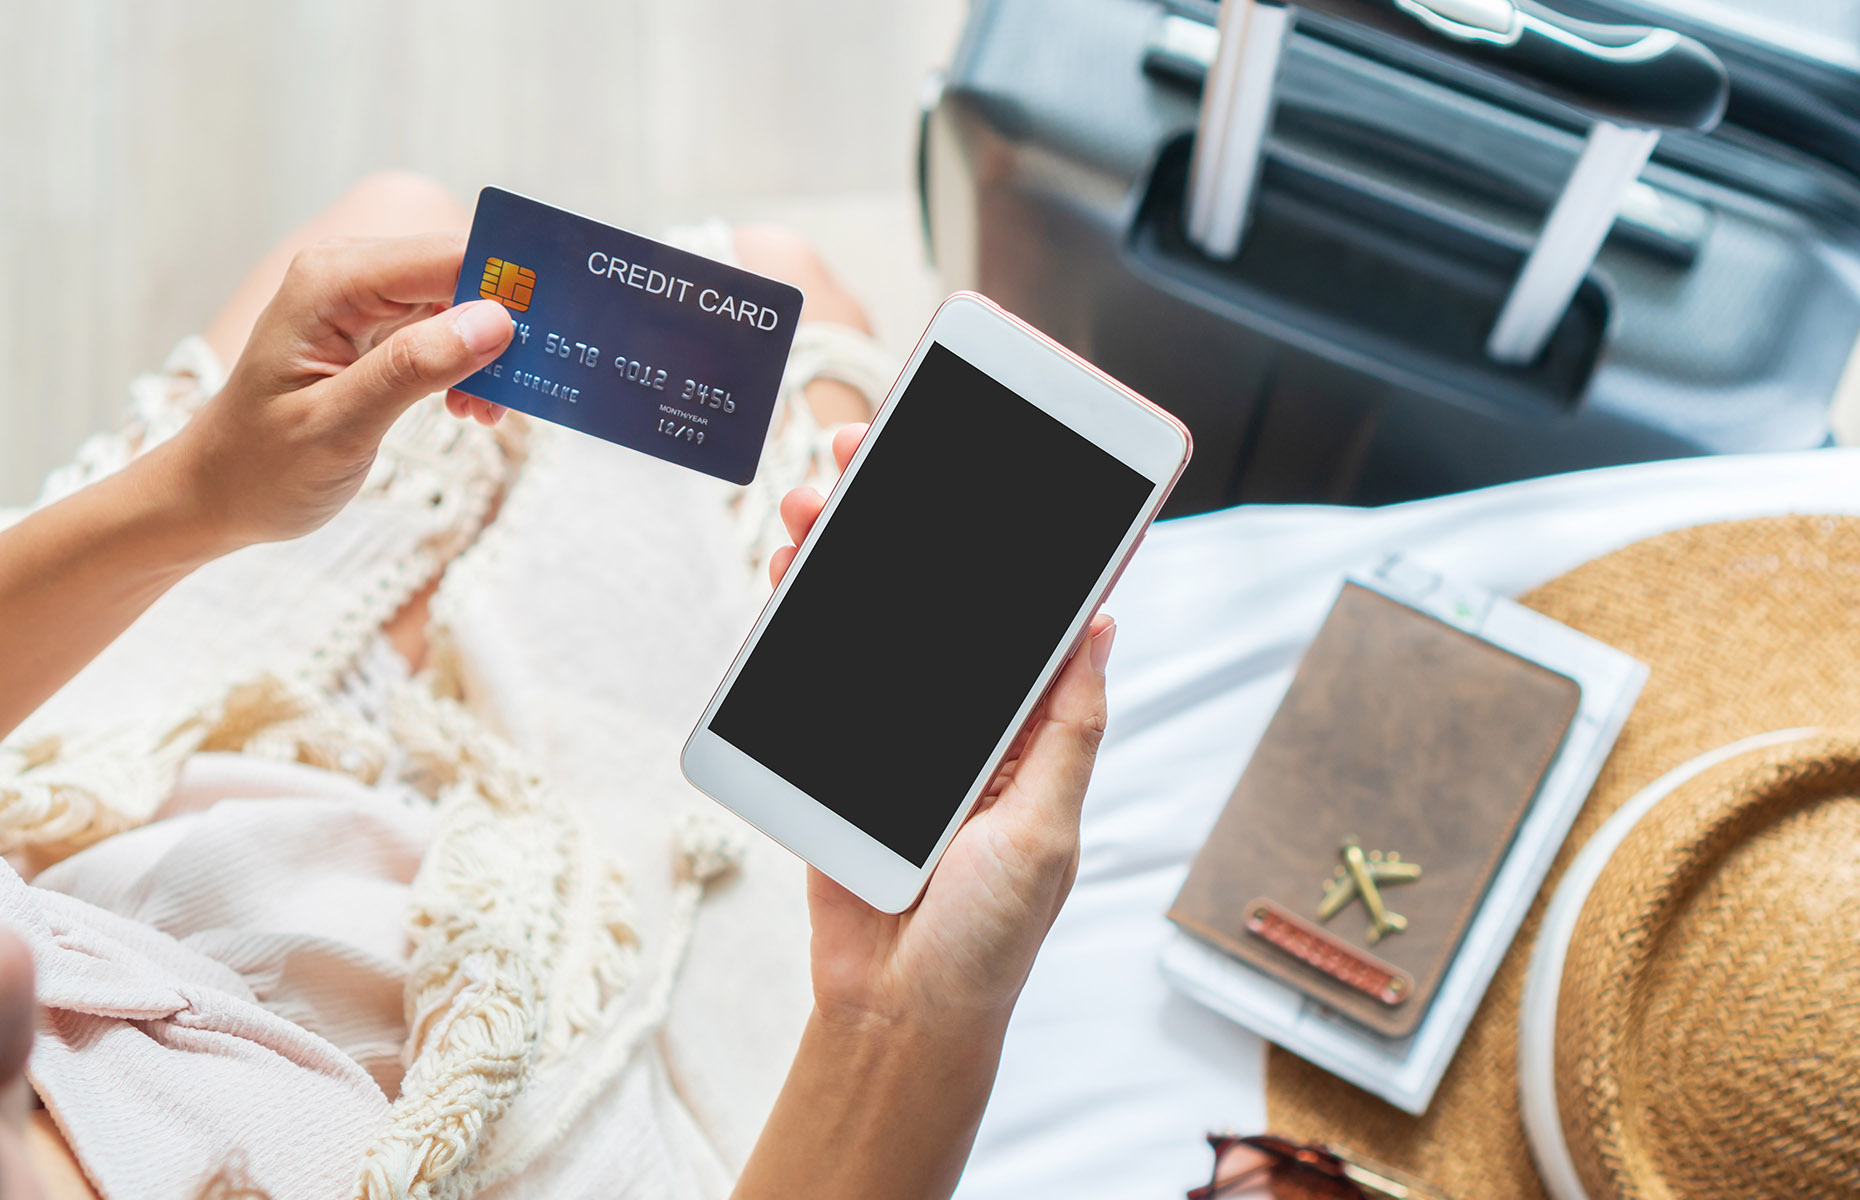 5. Thẻ sắc nét Tùy thuộc vào quốc gia bạn đang đi du lịch, sử dụng thẻ có thể an toàn hơn so với mang theo tiền mặt. Và còn nhiều phương thức thanh toán không dùng tiền mặt khác mà bạn có thể sử dụng khi đi du lịch, bao gồm Apple Pay, Samsung Pay, PayPal và các loại thẻ du lịch như Revolut hoặc WeSwap. Nhưng hãy đảm bảo điện thoại của bạn được bảo mật và cập nhật công nghệ thanh toán mới nhất trước khi bạn đi. Ngoài ra, hãy cho nhà cung cấp thẻ của bạn biết bạn đang ra nước ngoài để thẻ không bị từ chối hoặc đóng băng tại điểm đến của bạn.   Cân nhắc sử dụng thẻ không có phí giao dịch nước ngoài, chẳng hạn như Hộ chiếu tiền mặt của eurochange có thể lưu trữ tối đa 10 loại tiền tệ trên thẻ của bạn cùng một lúc và nó luôn biết loại tiền tệ phù hợp để sử dụng mọi lúc mọi nơi.  Nếu định mua thứ gì đó đắt tiền, tốt nhất bạn nên sử dụng thẻ tín dụng. Bằng cách đó, nếu đồ lưu niệm của bạn bị đánh cắp, bạn có thể gọi cho công ty thẻ của mình và họ thường sẽ hoàn lại tiền. 